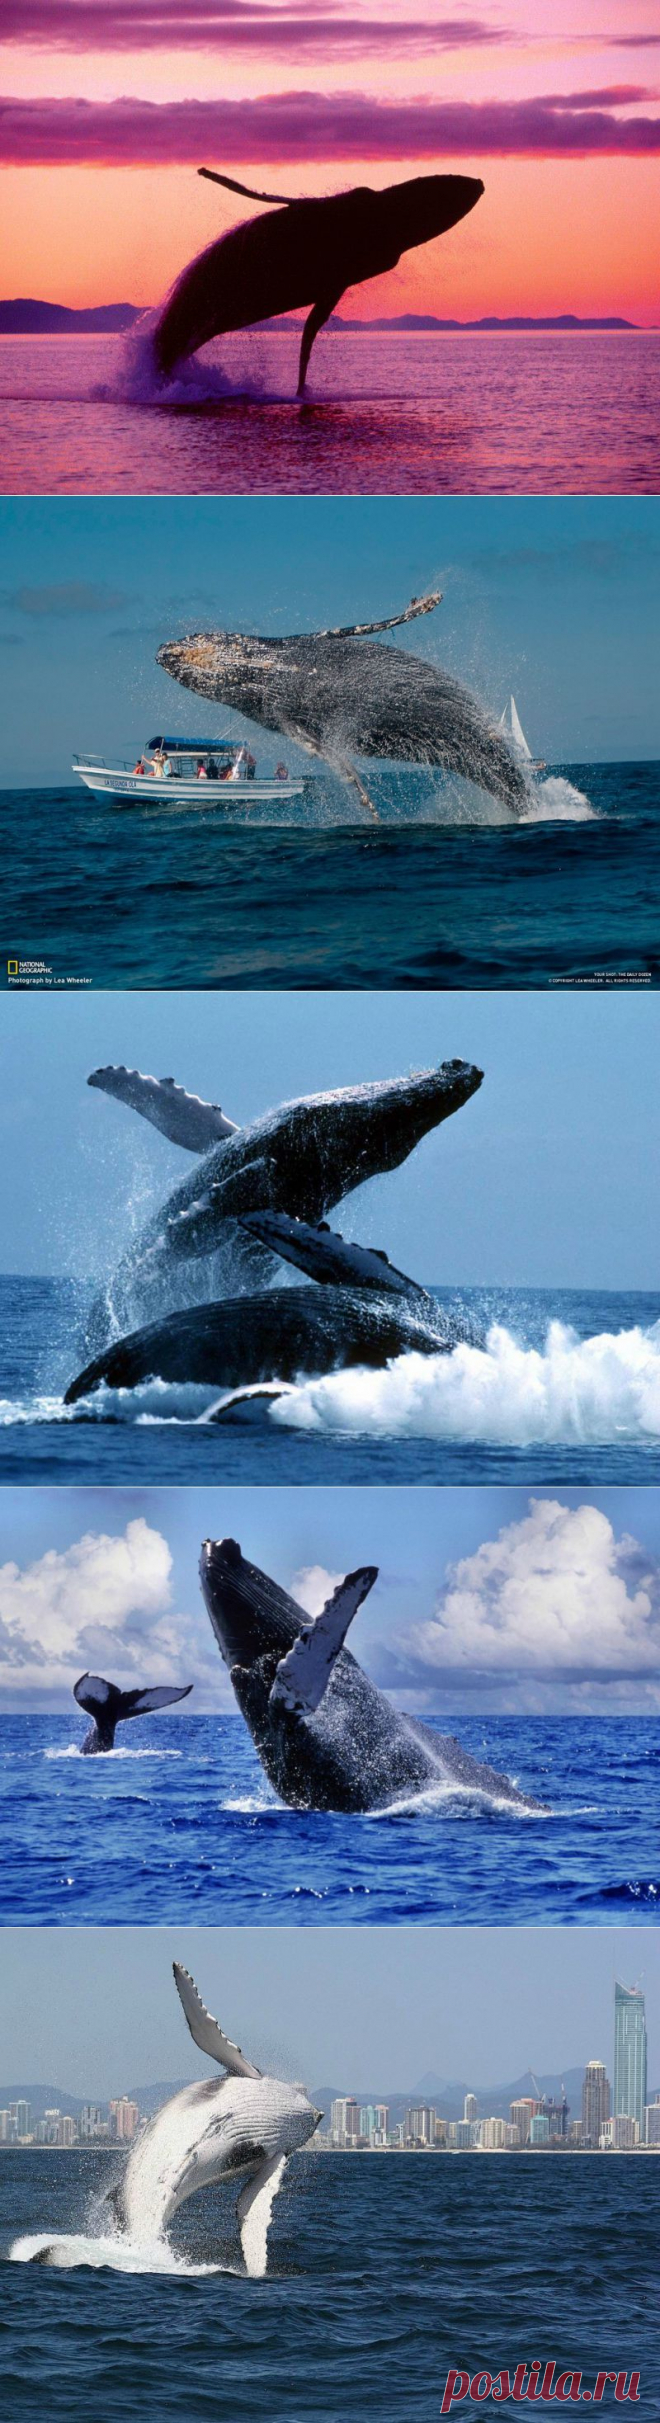 Прыжки горбатых китов : НОВОСТИ В ФОТОГРАФИЯХ